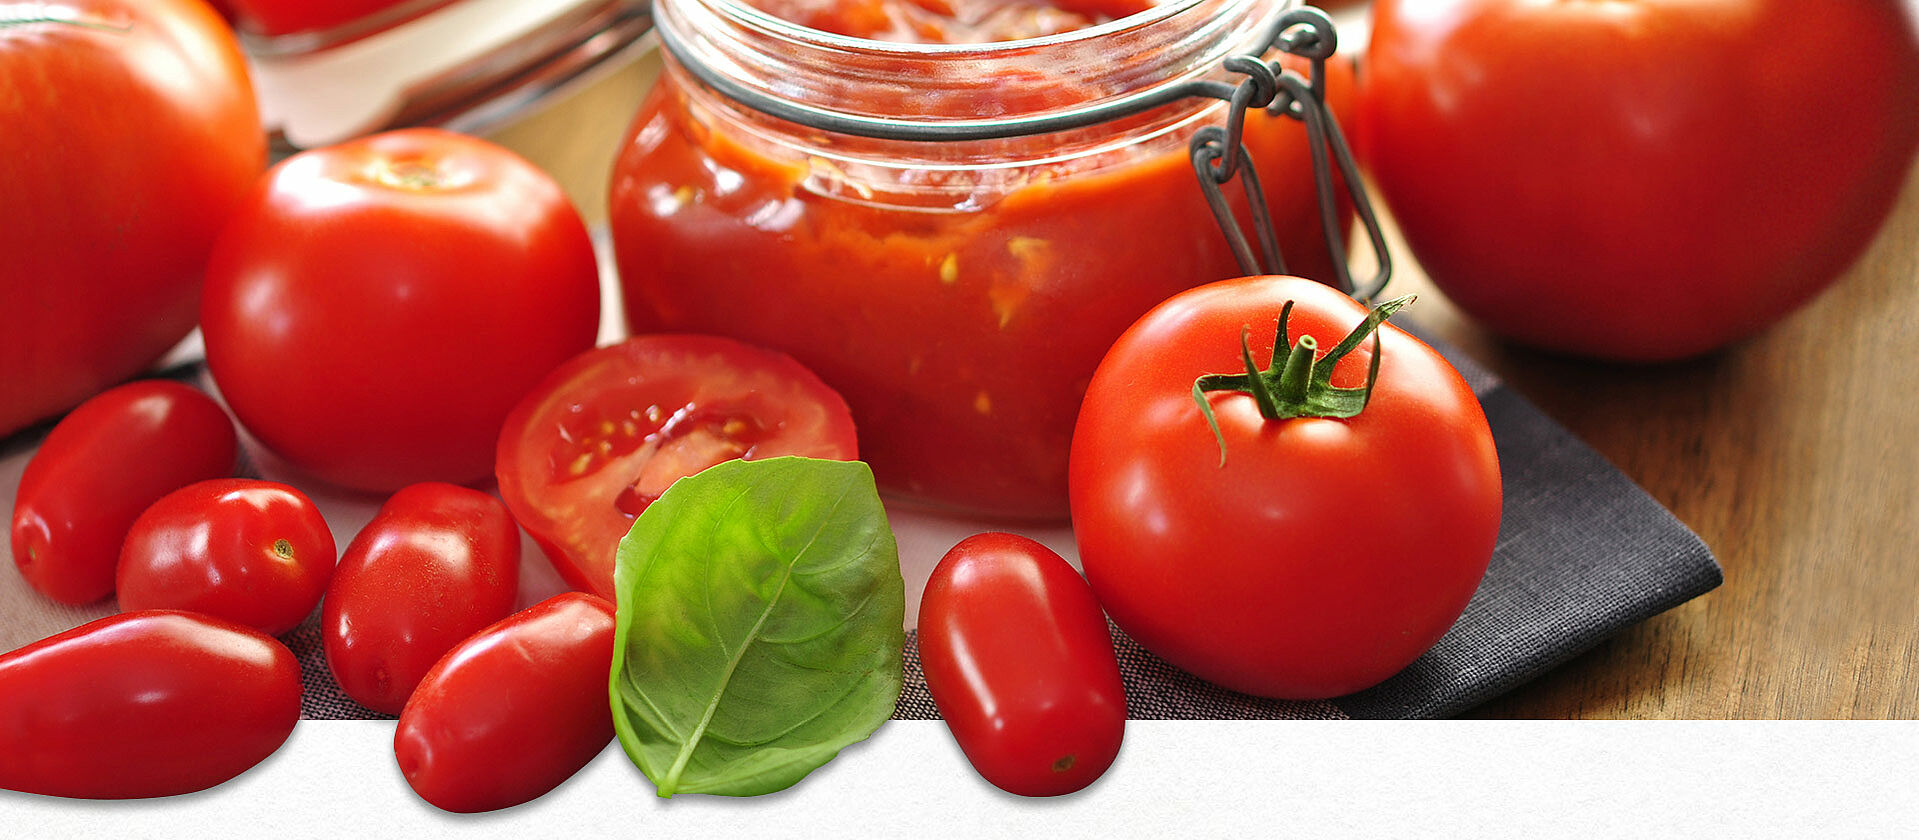 Fruchtiger Tomaten-Dip im Glas und frische Tomaten